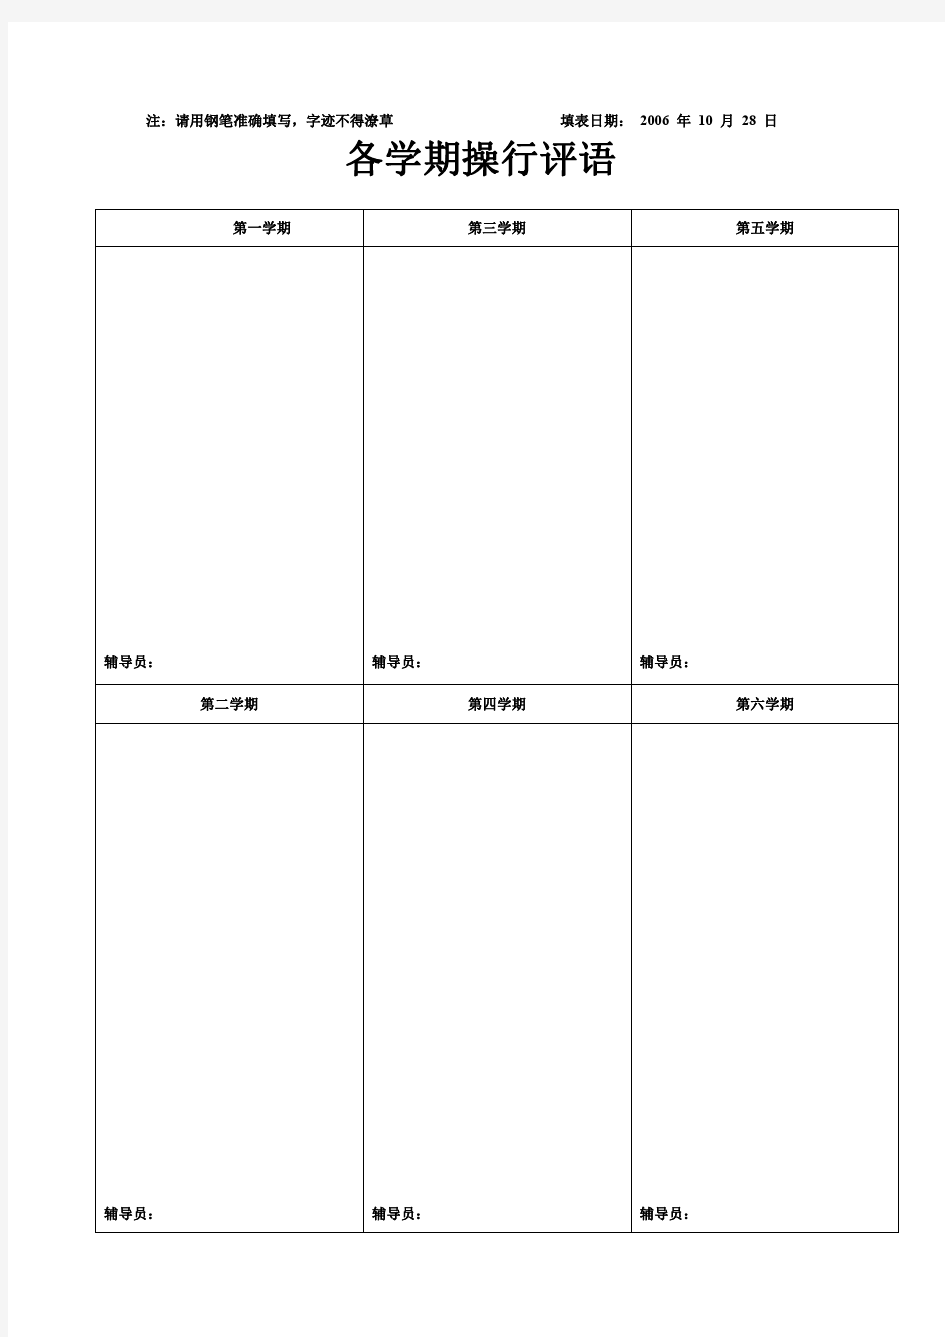 学生学籍信息表(模板)